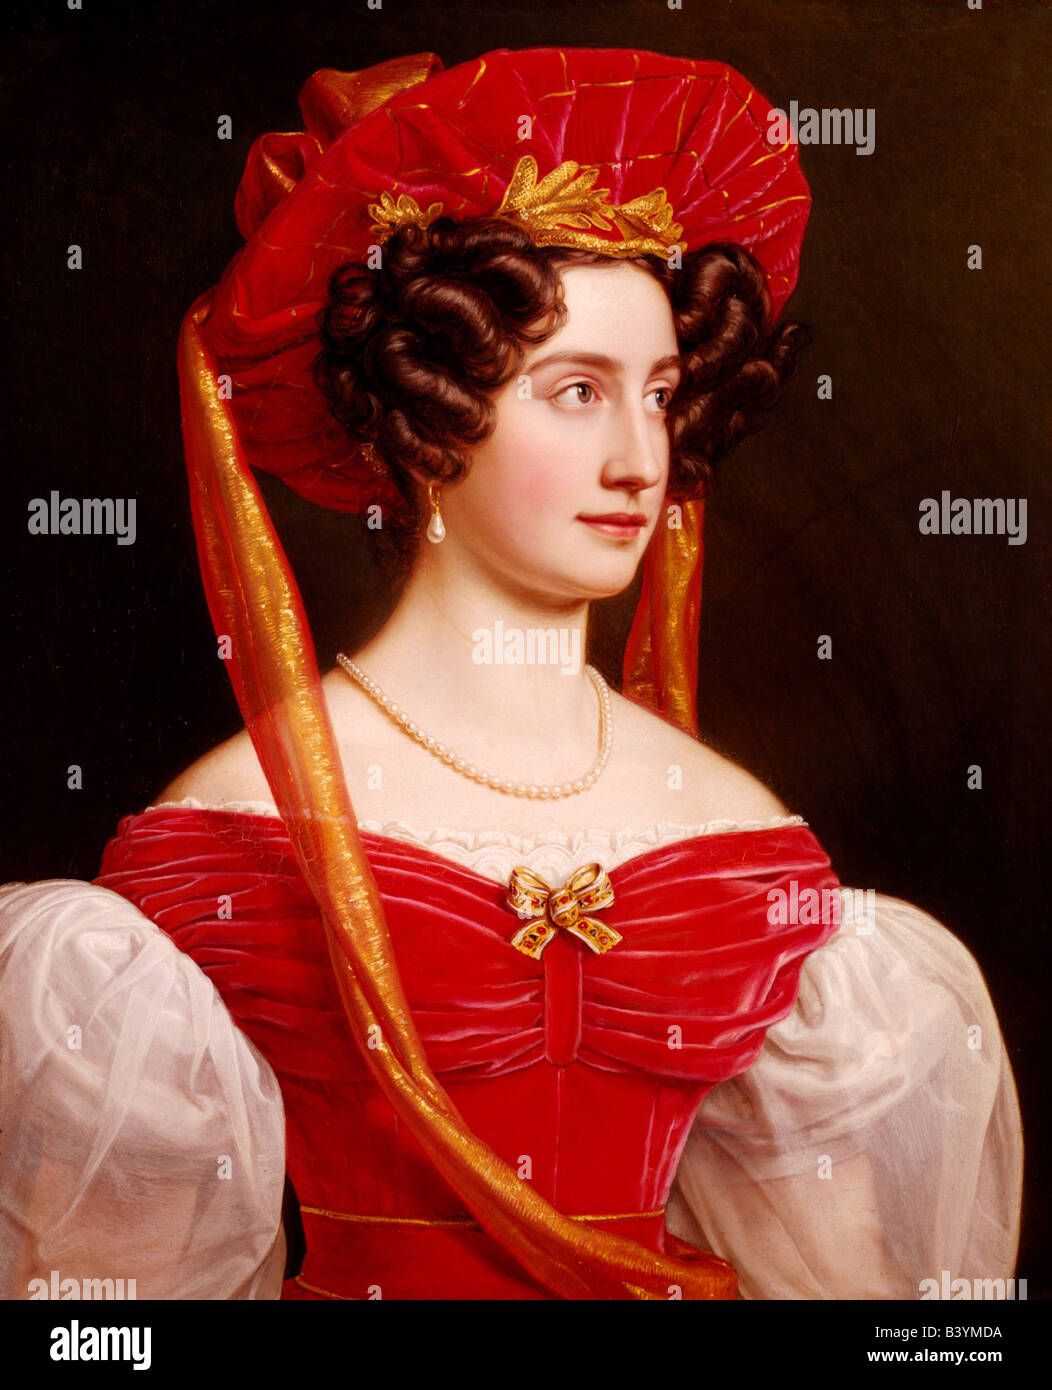 Bildende Kunst, Stieler, Joseph Karl, 1.11.1781 - 9.4.1858, Malerei, "Gräfin Isabella von Taufkirchen-Stille", 19. Jahrhundert Stockfoto